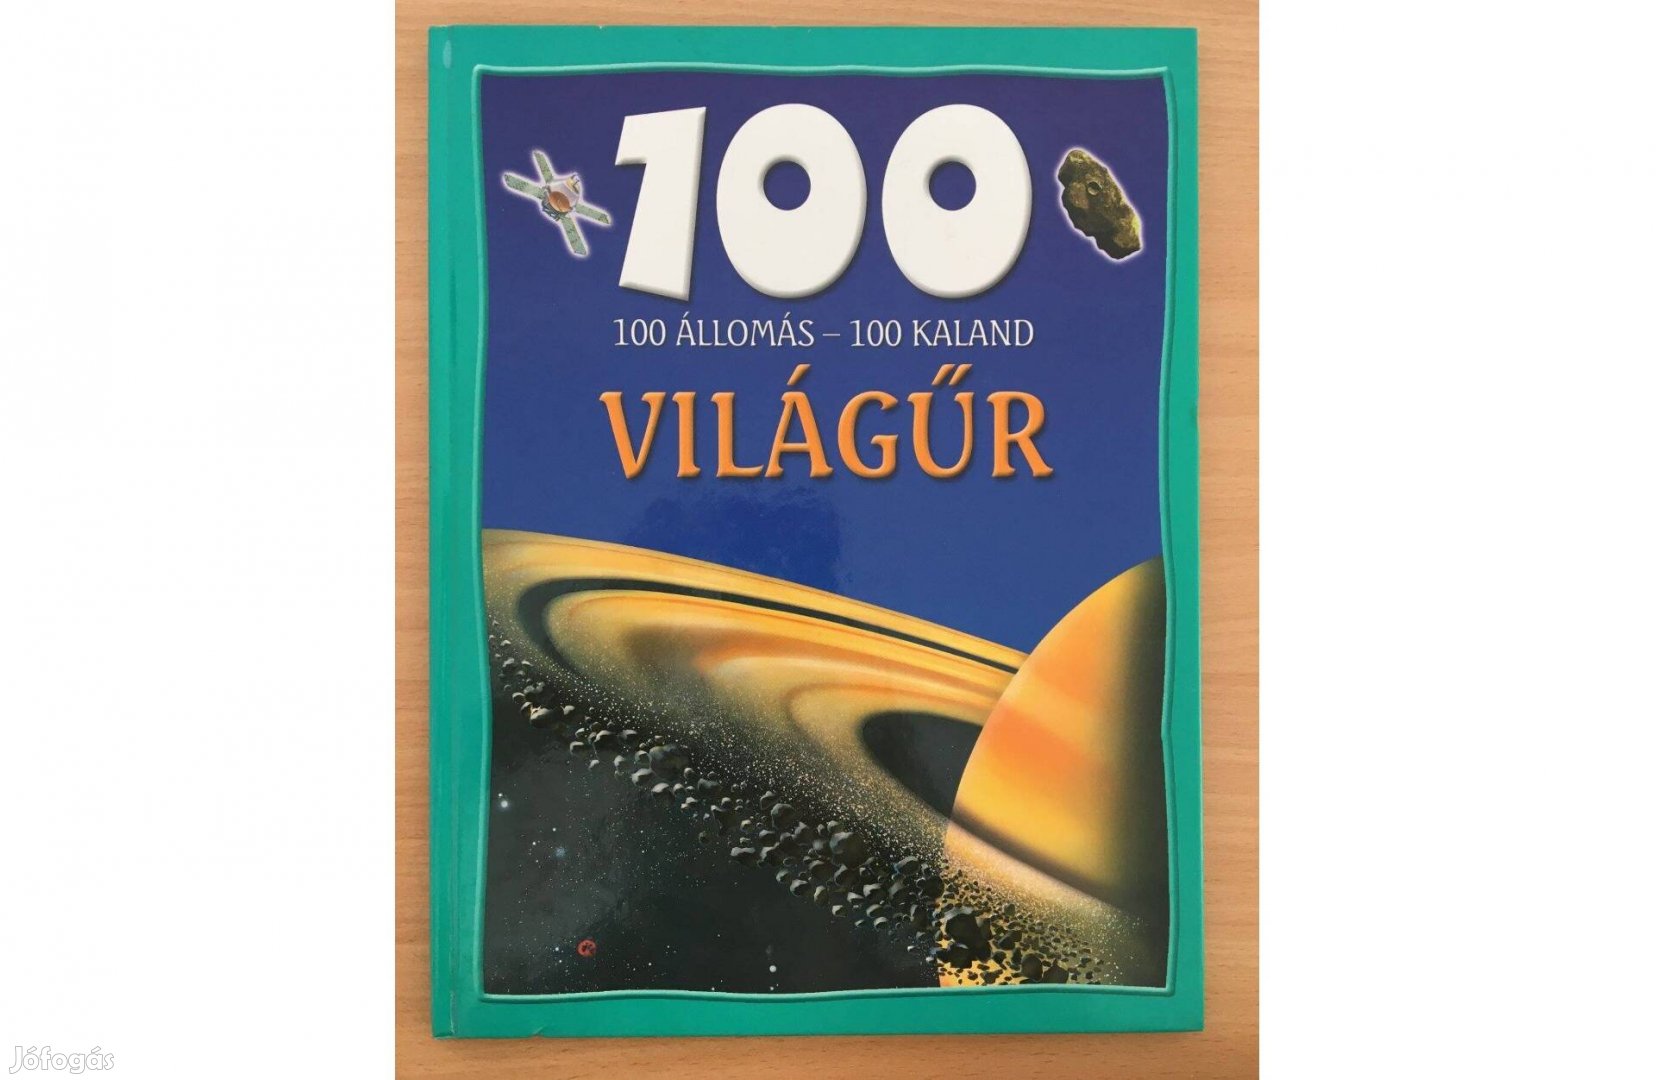 100 állomás 100 kaland Világűr című könyv